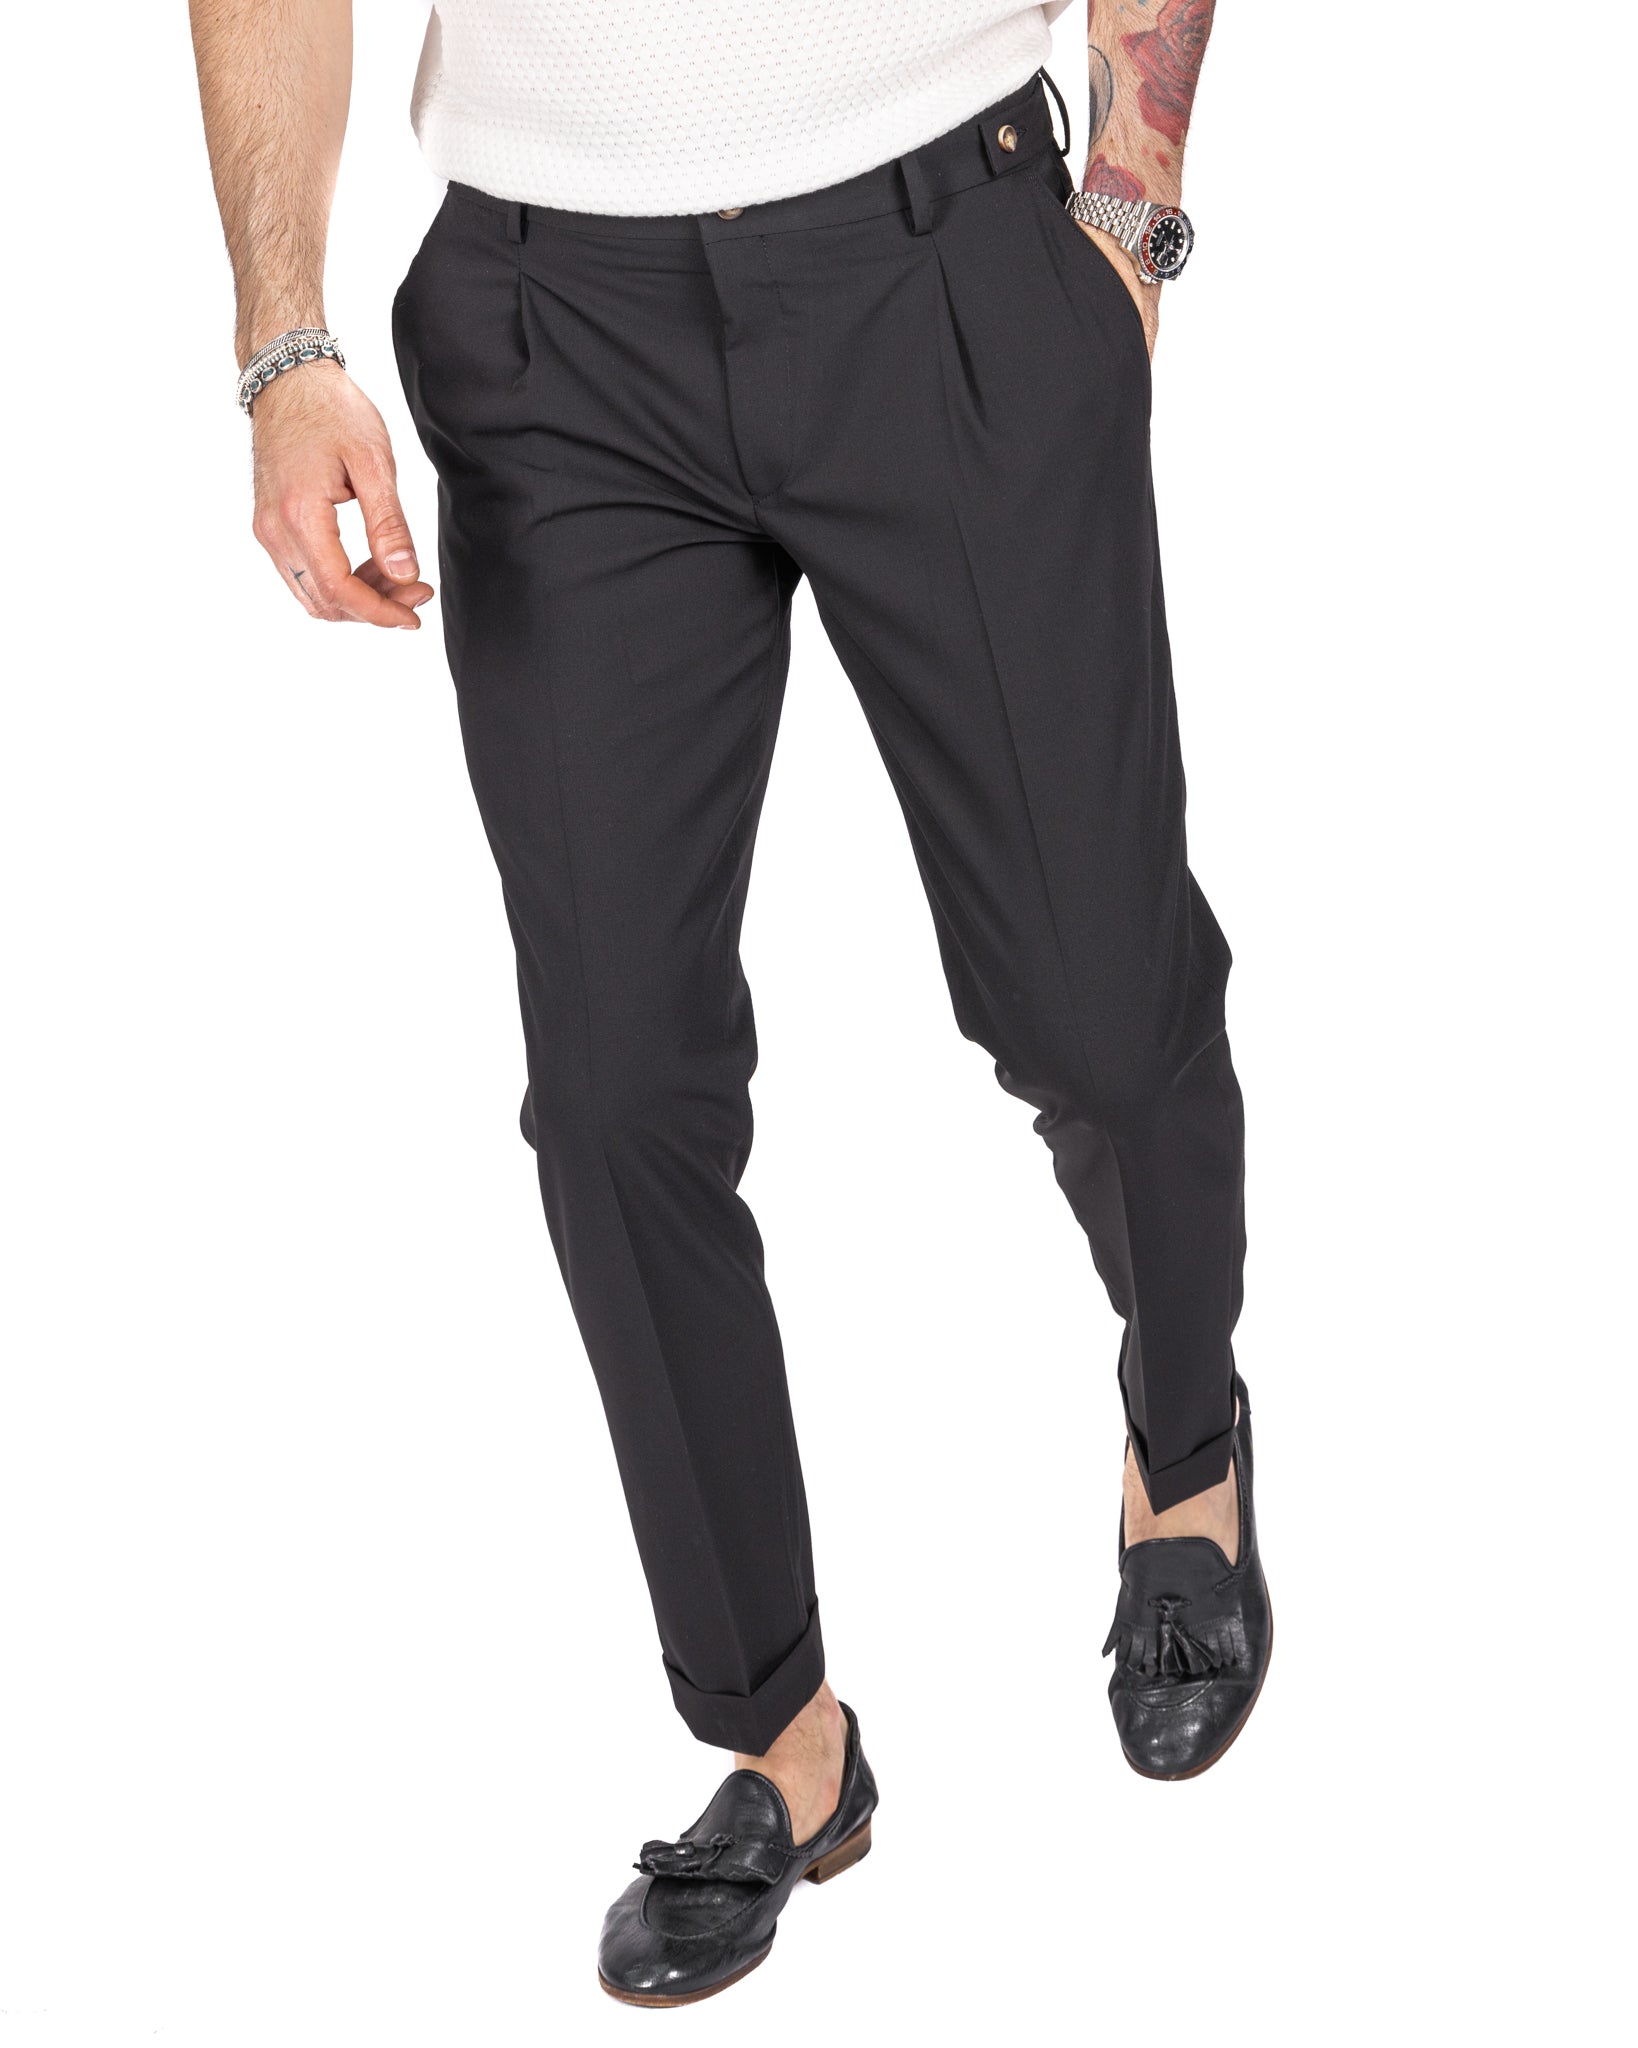 Milano - pantalon noir basique